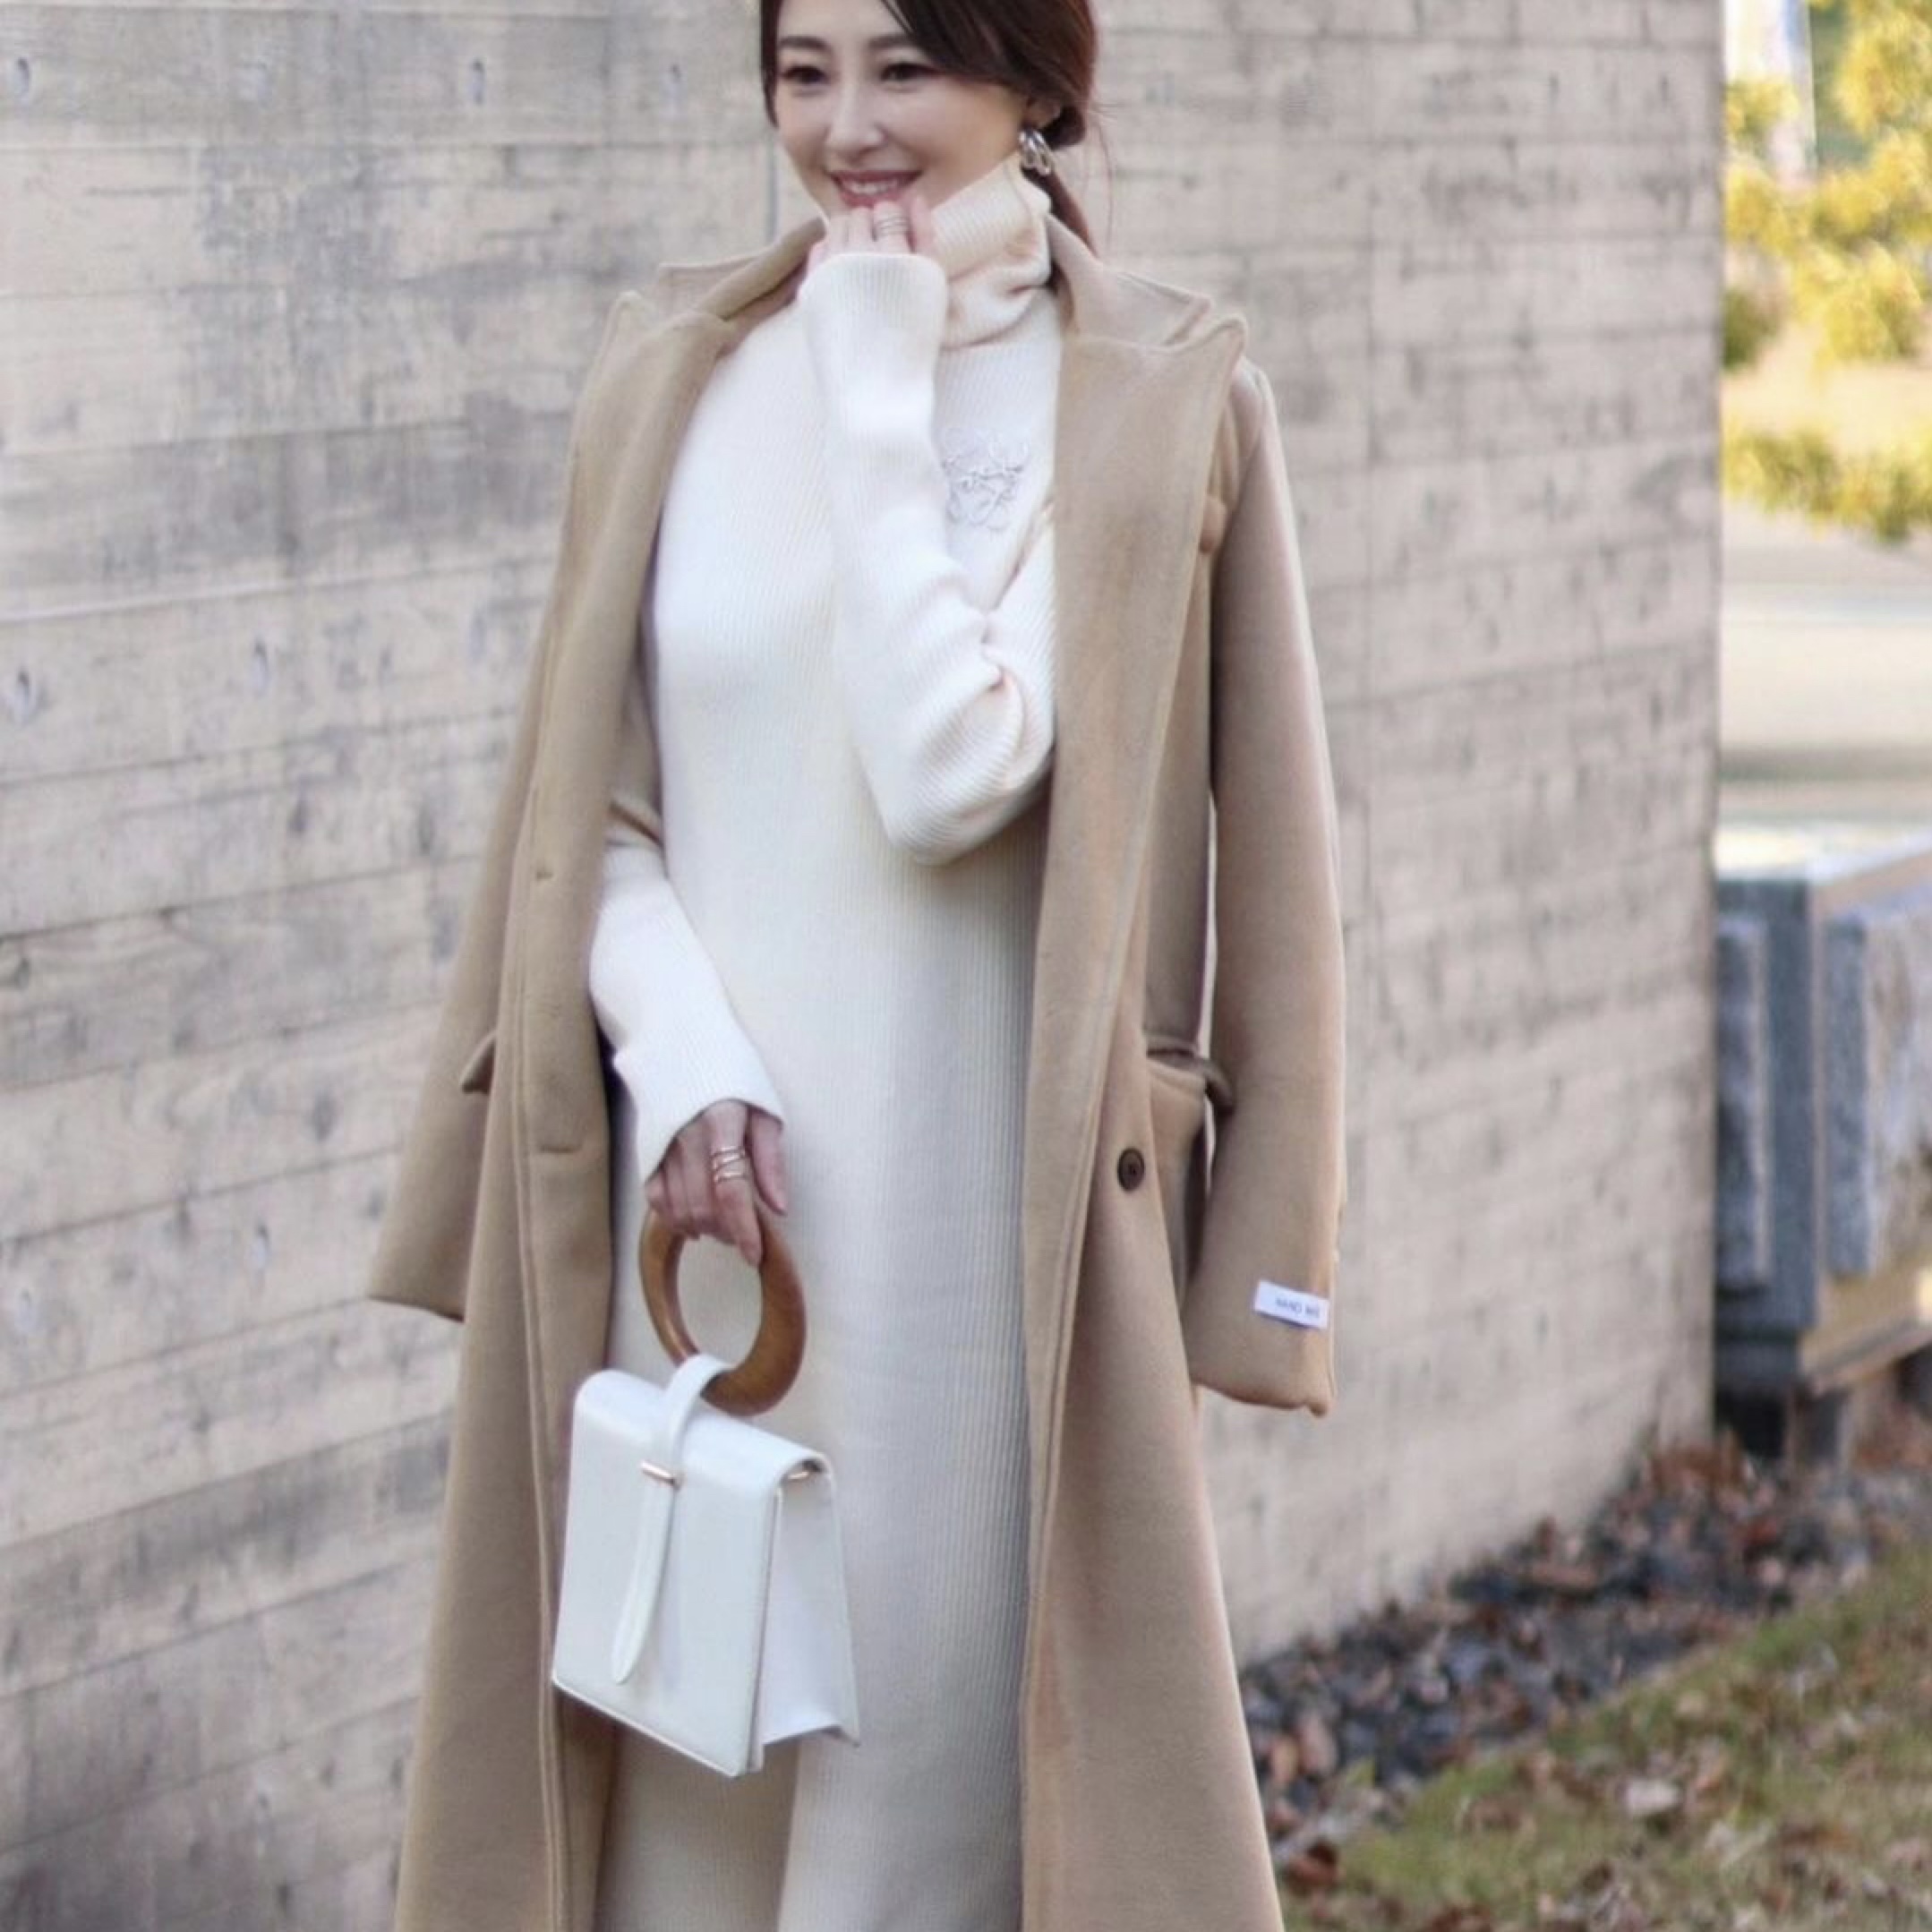 Renaさん着用アイテム 冬のコート ワンピース2点セット ウールロングコート ロングリブワンピース きれいめコーデ Graces By Yuu